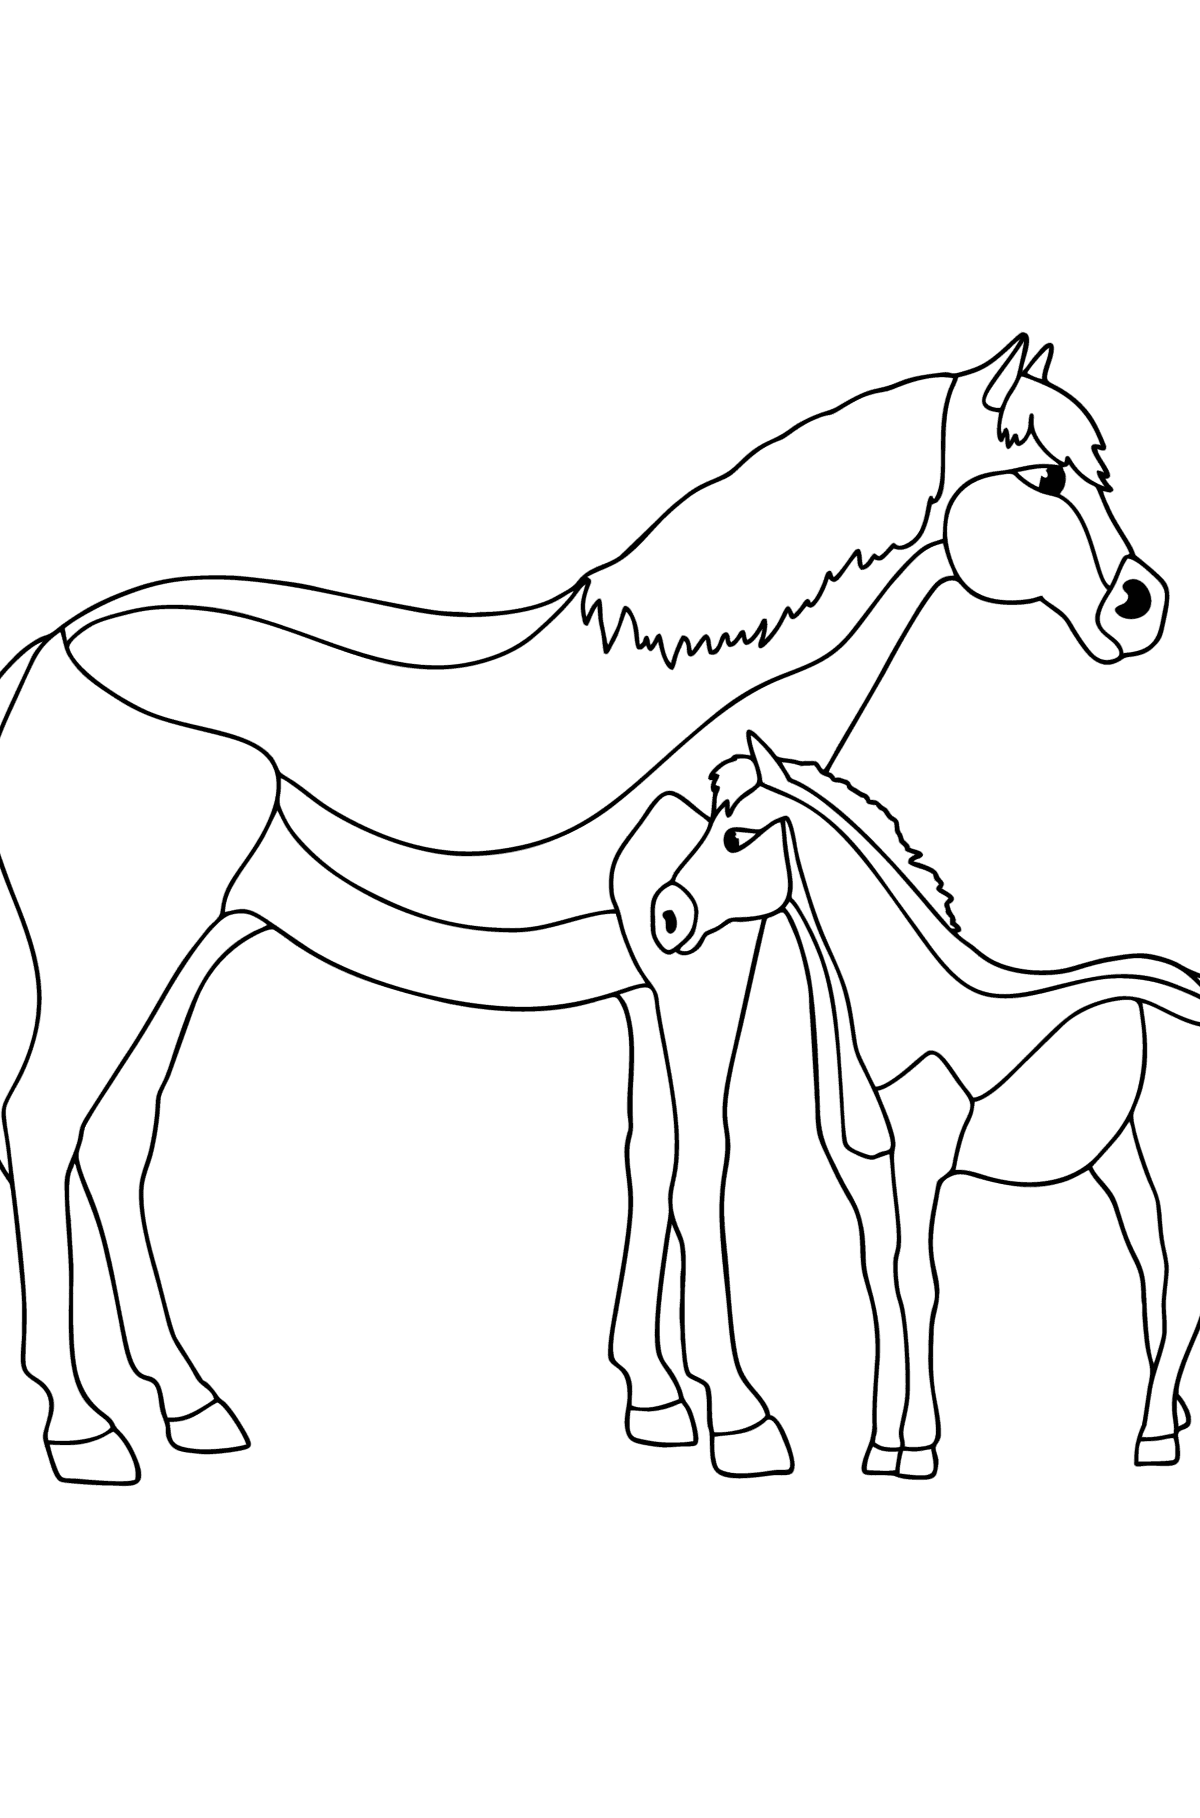 Mewarnai gambar Kuda dan anak kuda - Mewarnai gambar untuk anak-anak